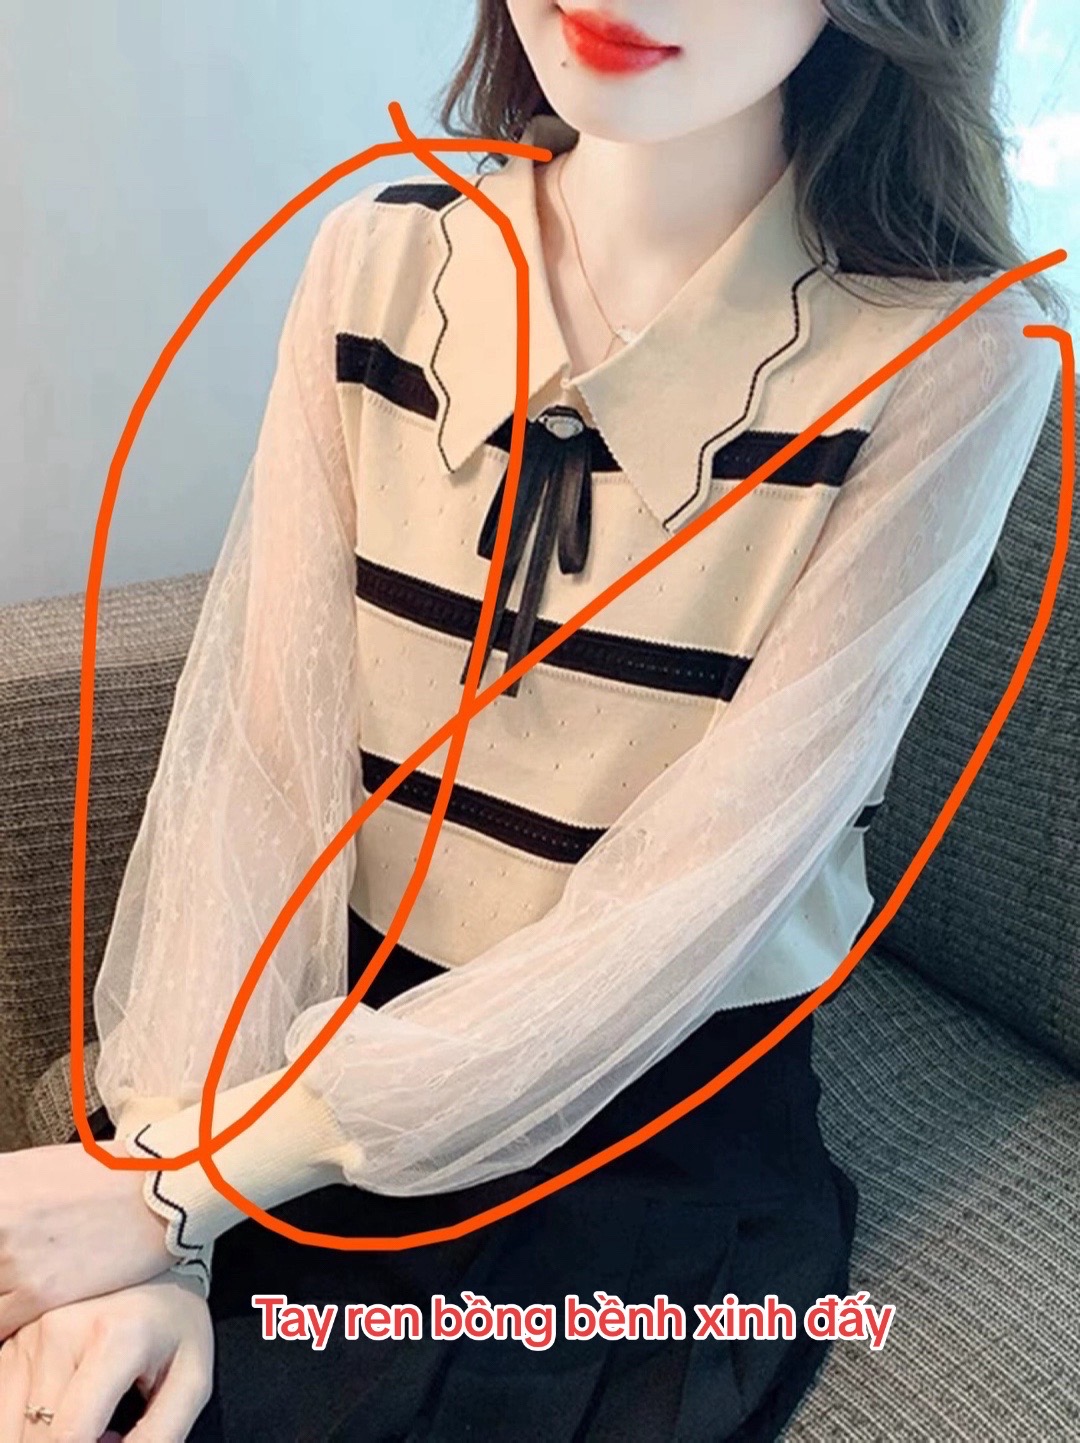 1001 chuyện cười ra nước mắt khi order quần áo trên Taobao: Hàng về tay "không đội trời chung" so với ảnh mẫu- Ảnh 9.